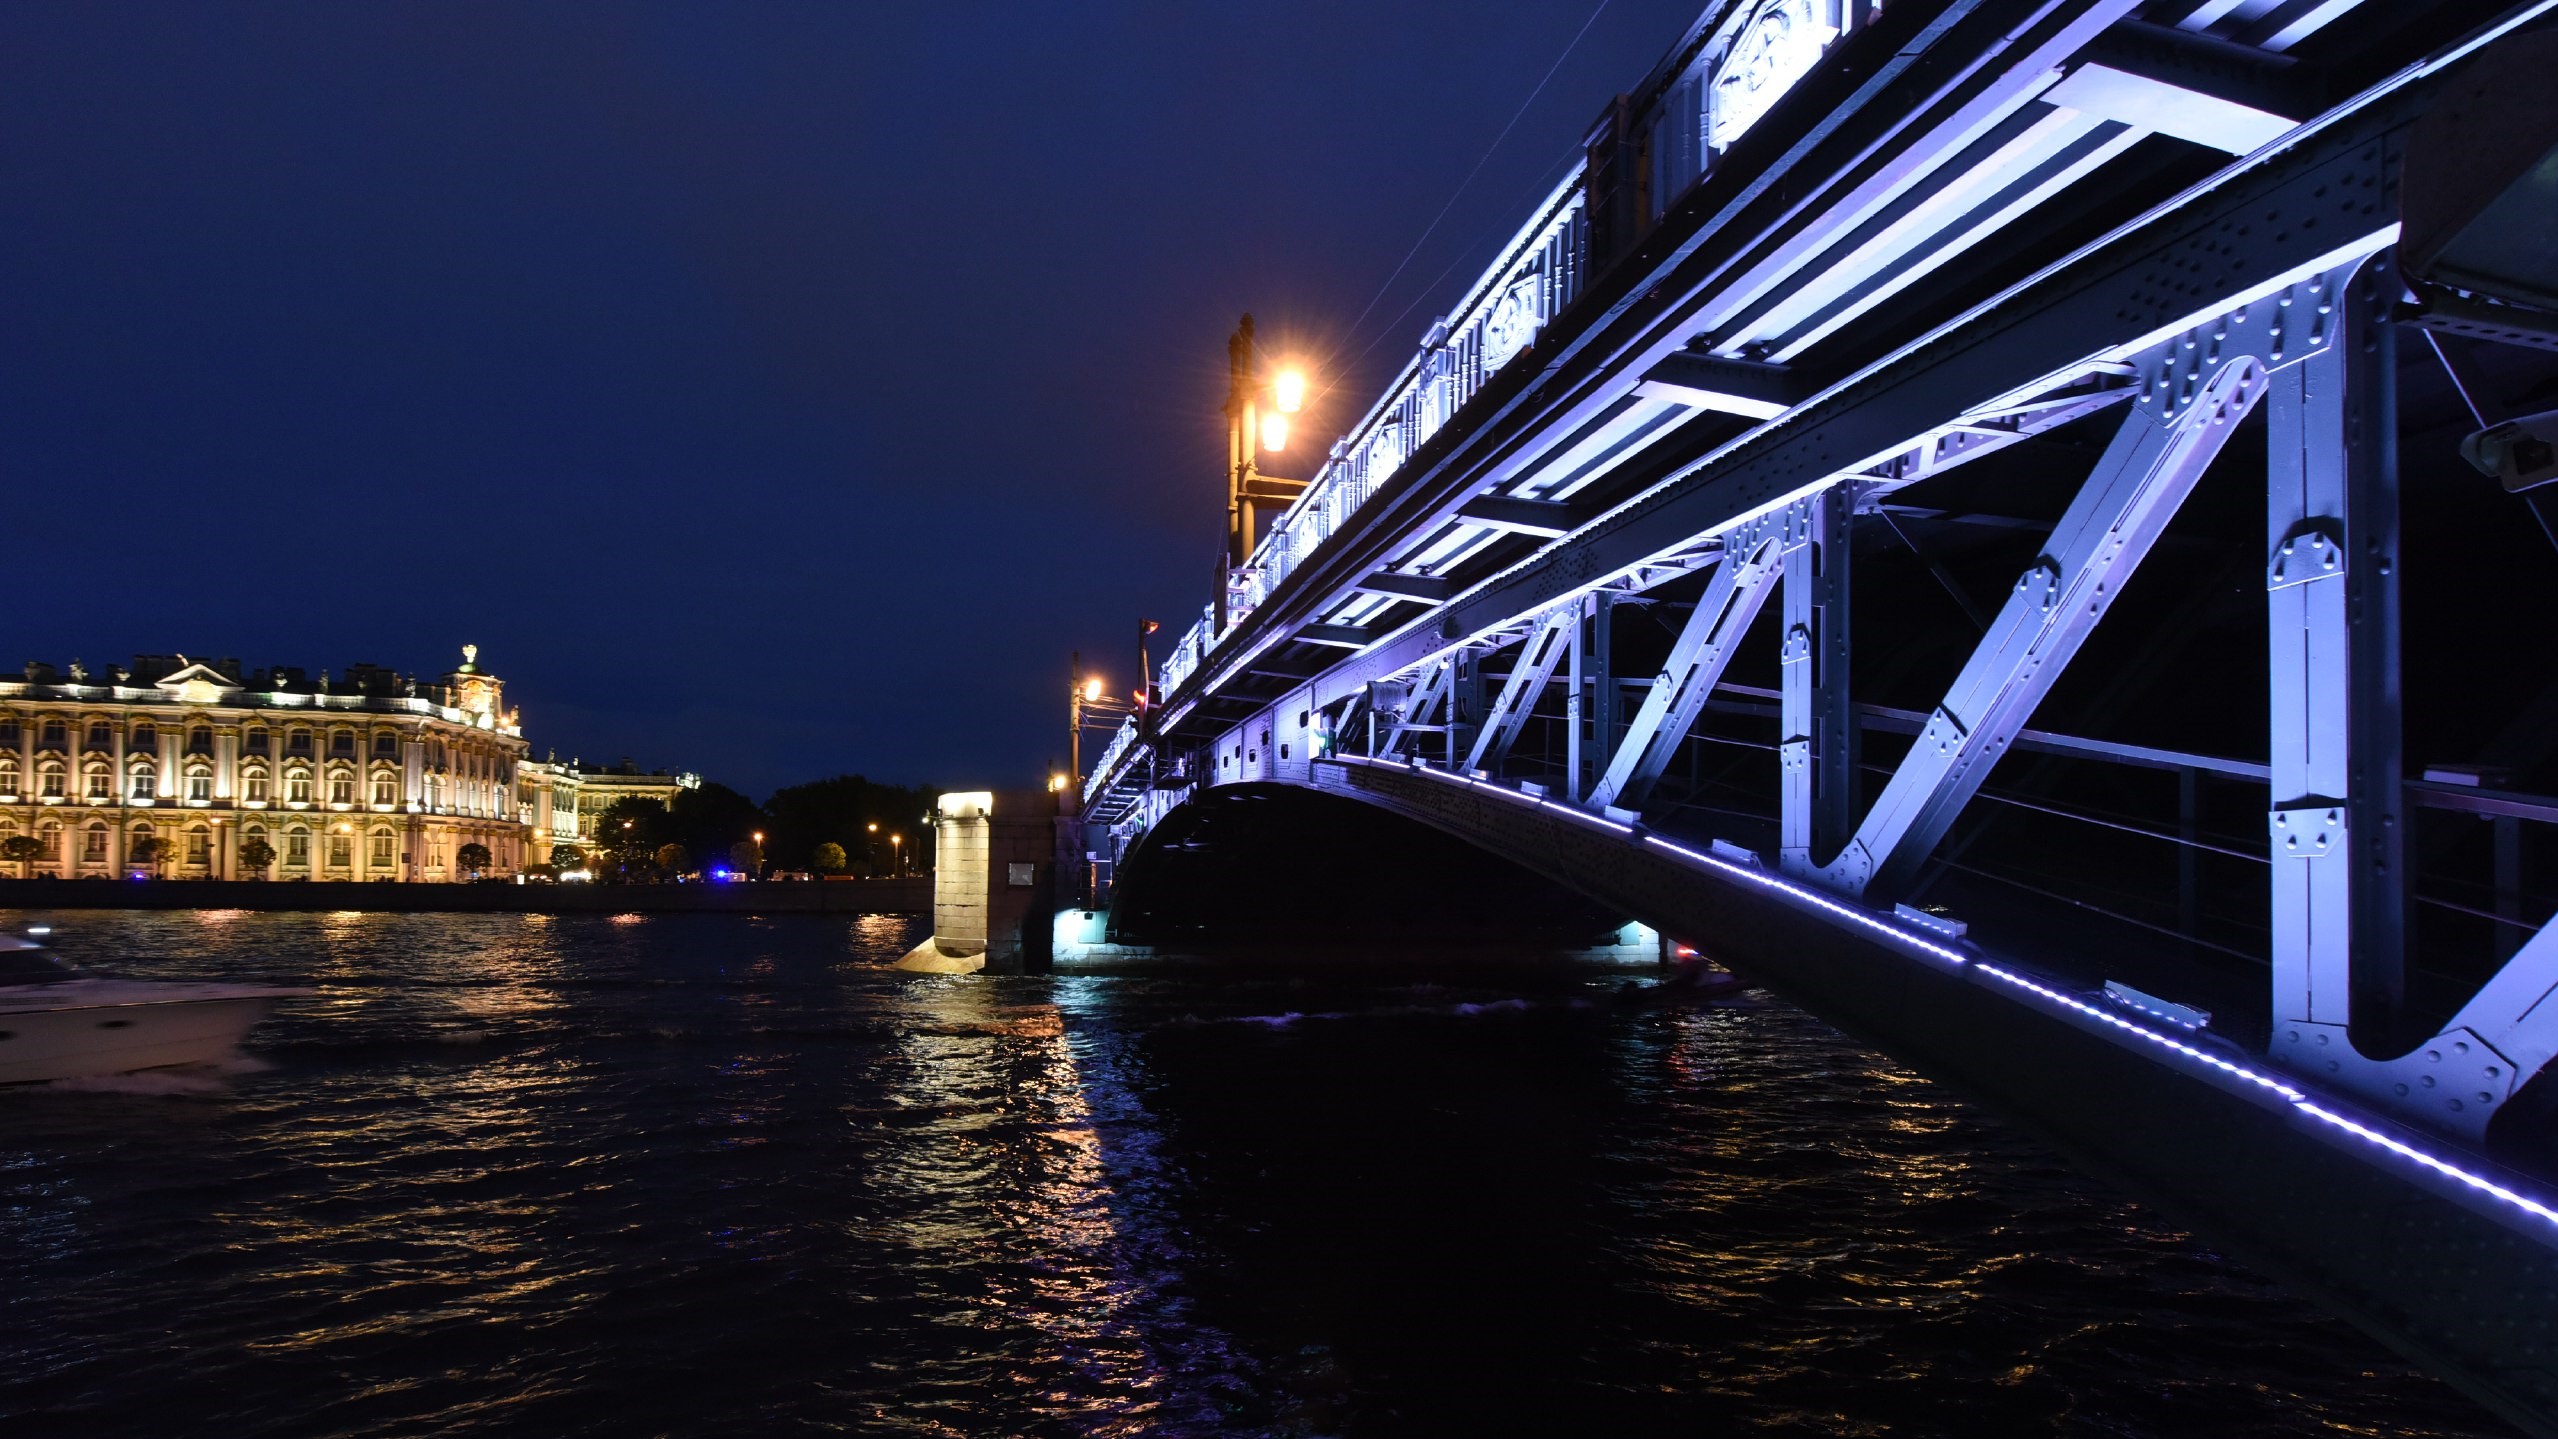 фото мостов санкт петербурга с описанием